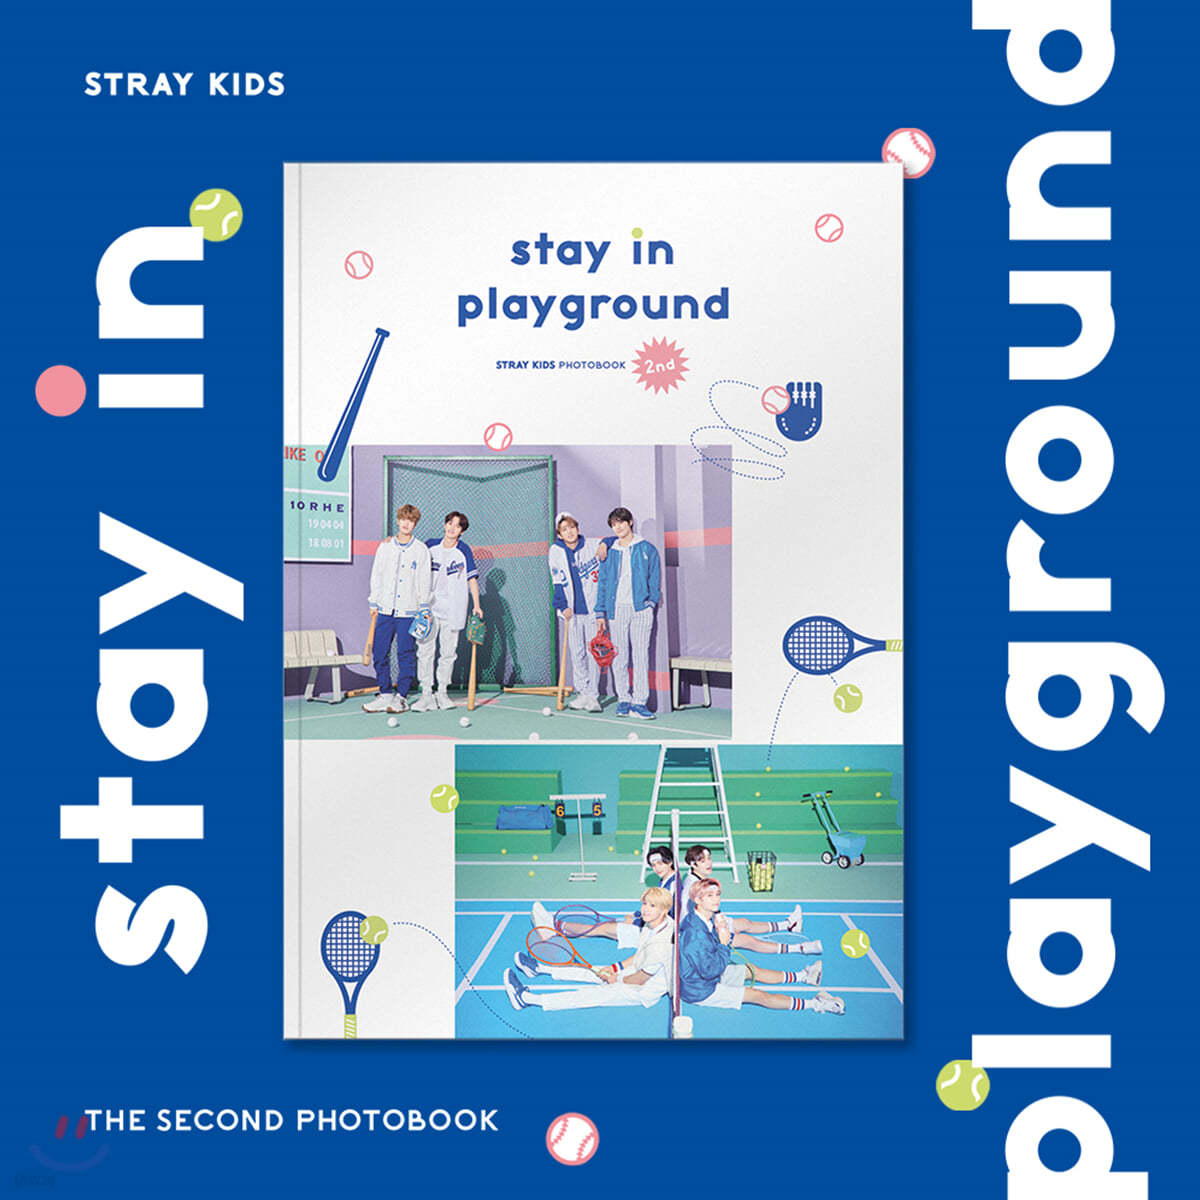 스트레이 키즈 (Stray Kids) - STRAY KIDS 2nd PHOTOBOOK [stay in playground]